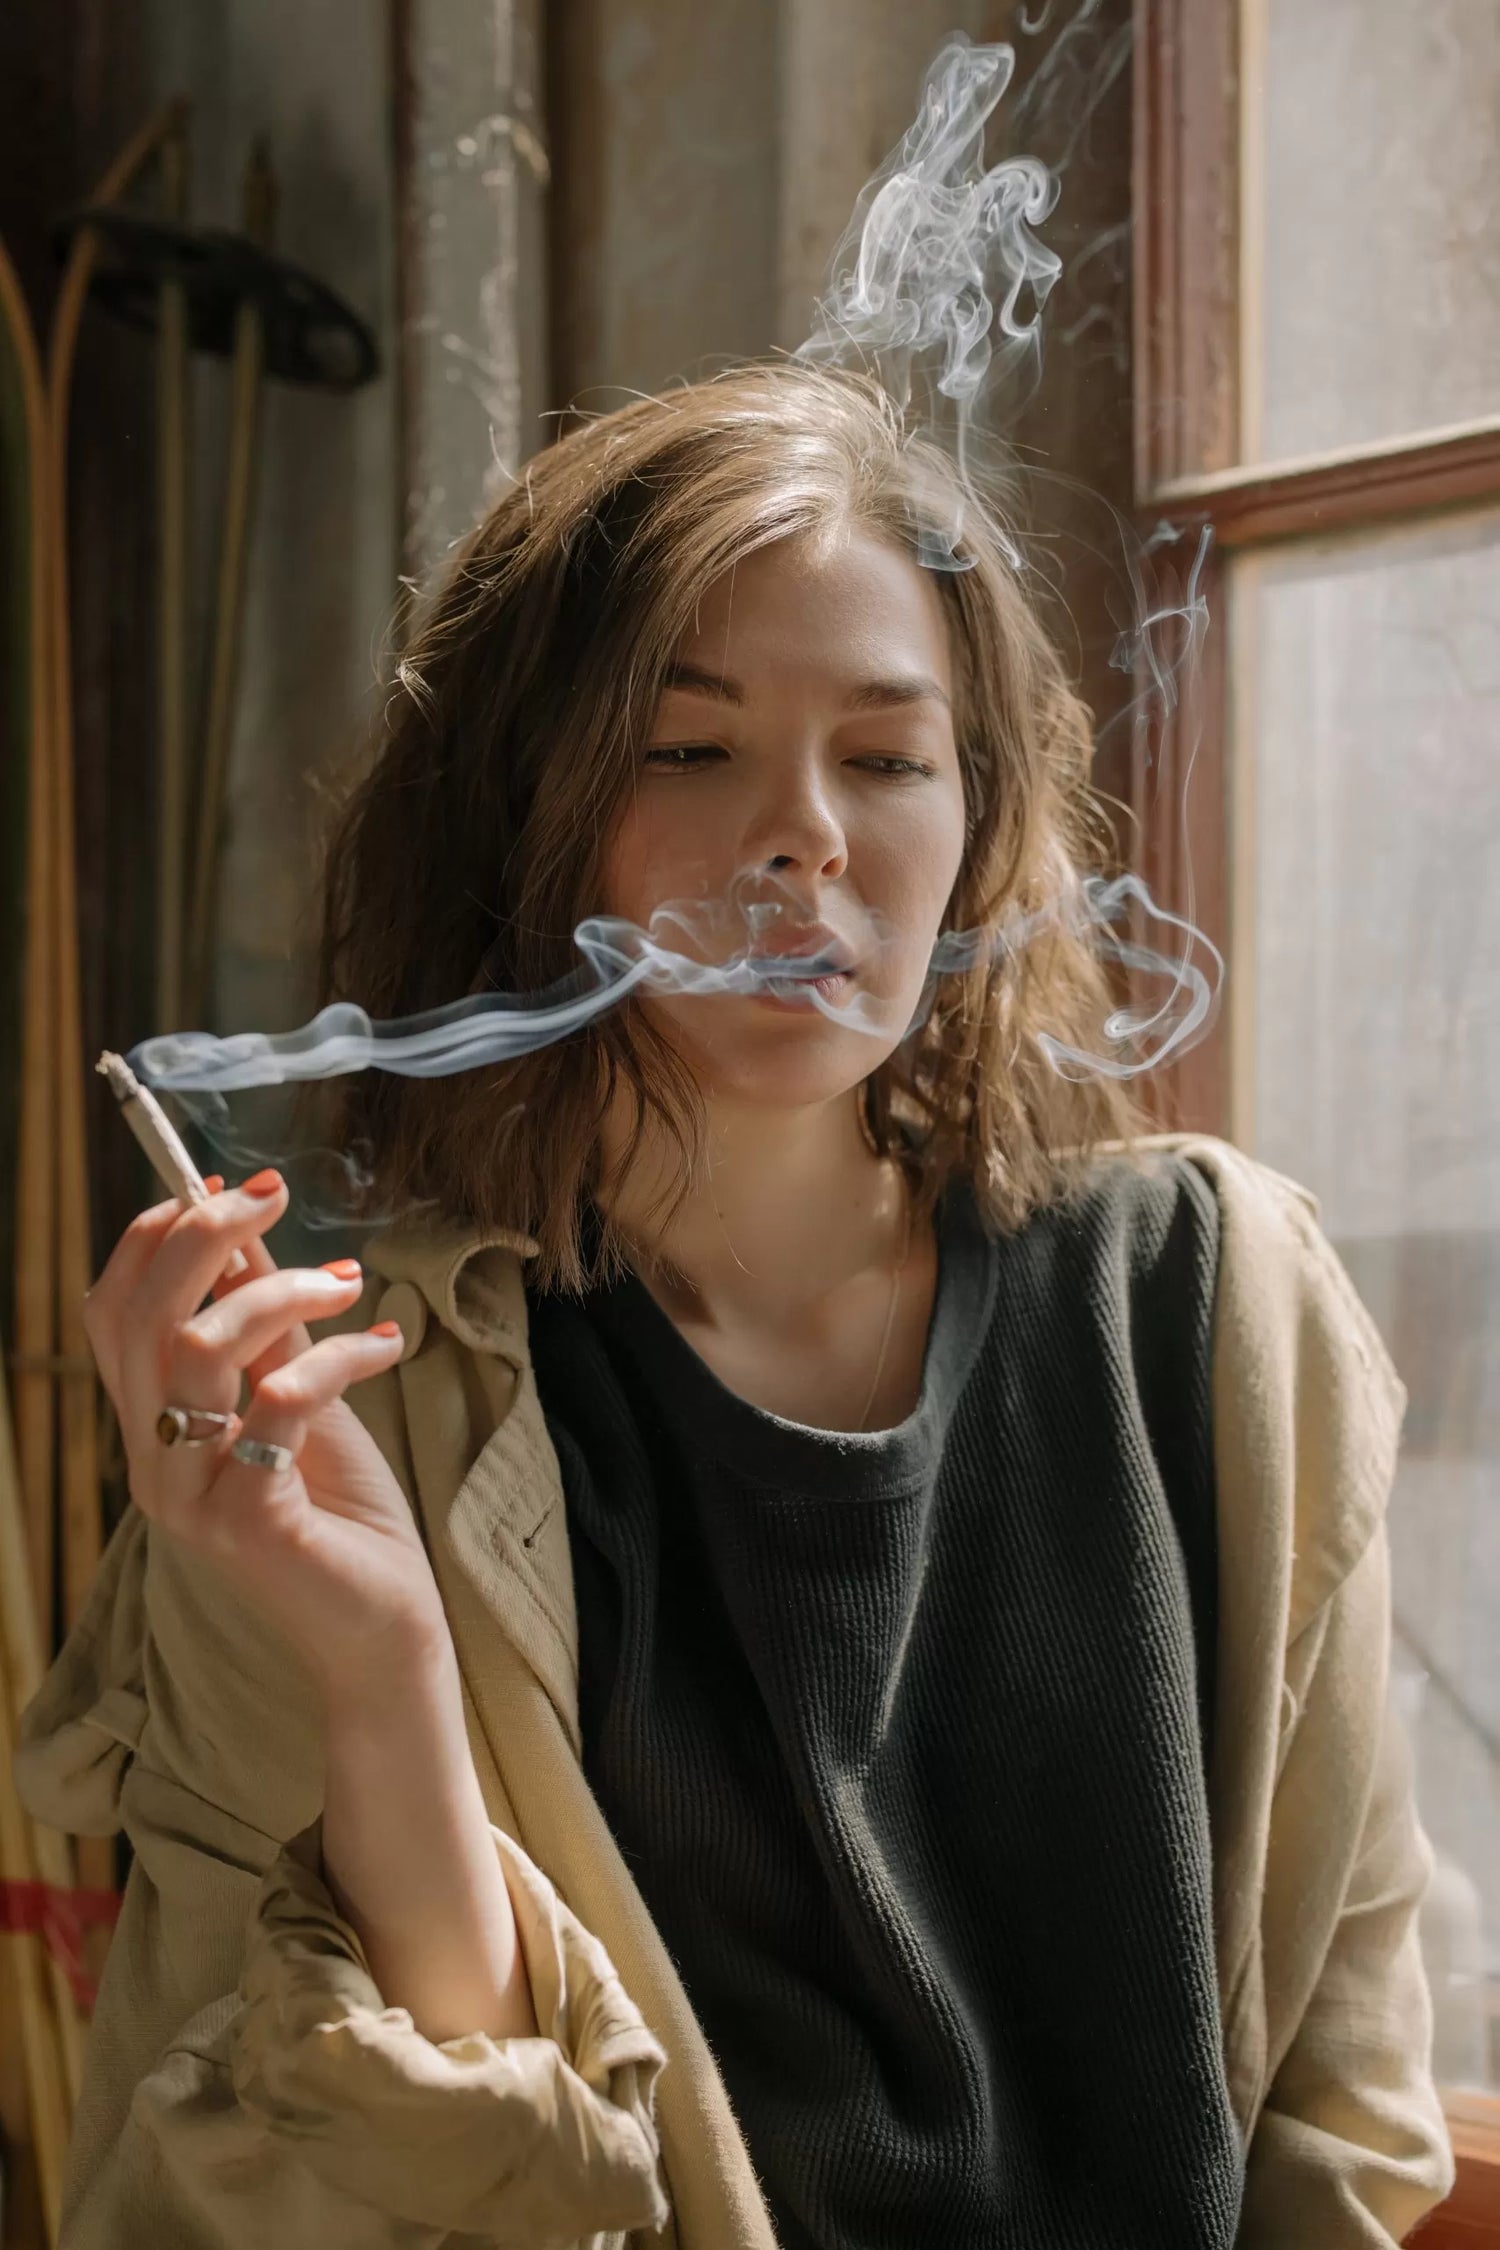 A woman smoking a hemp flower joint